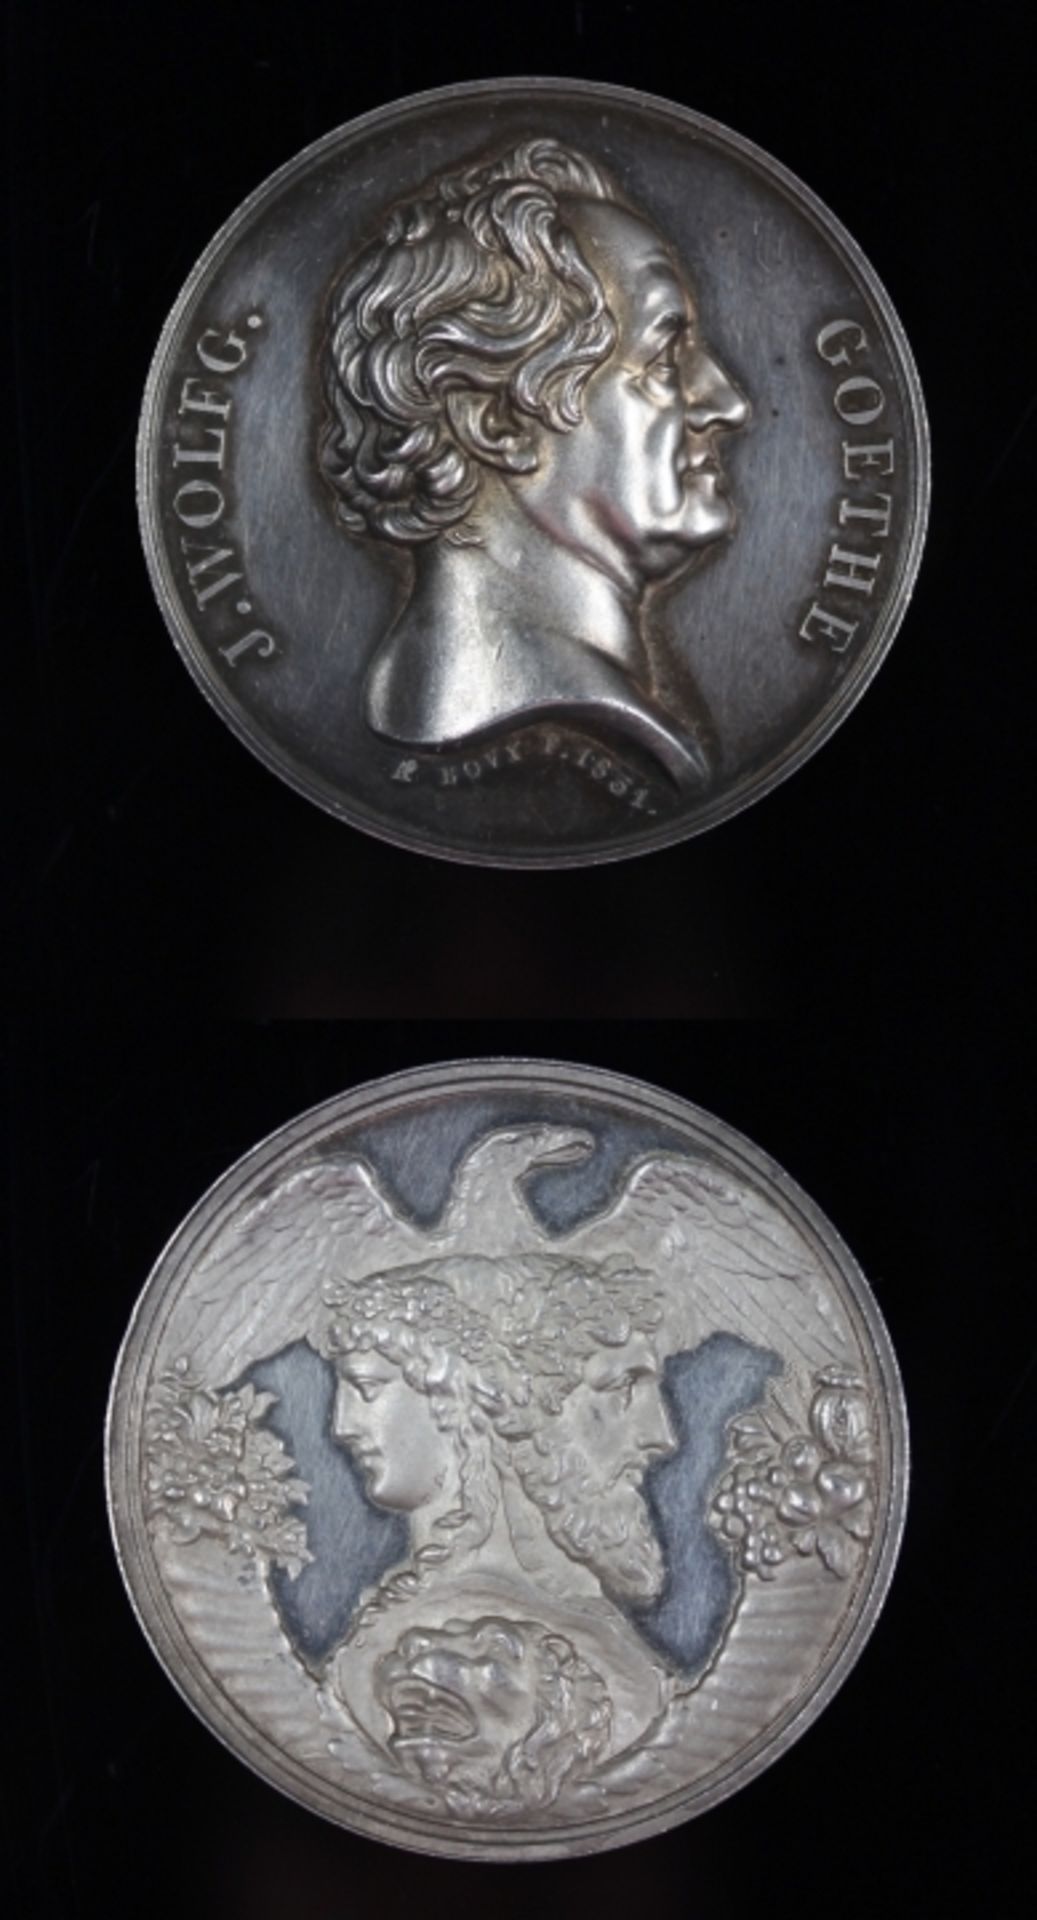 Silbermedaille von 1831, Johann Wolfgang von Goethe, Vs: Kopf nach rechts, Rs: Stadt Frankfurt a. M.